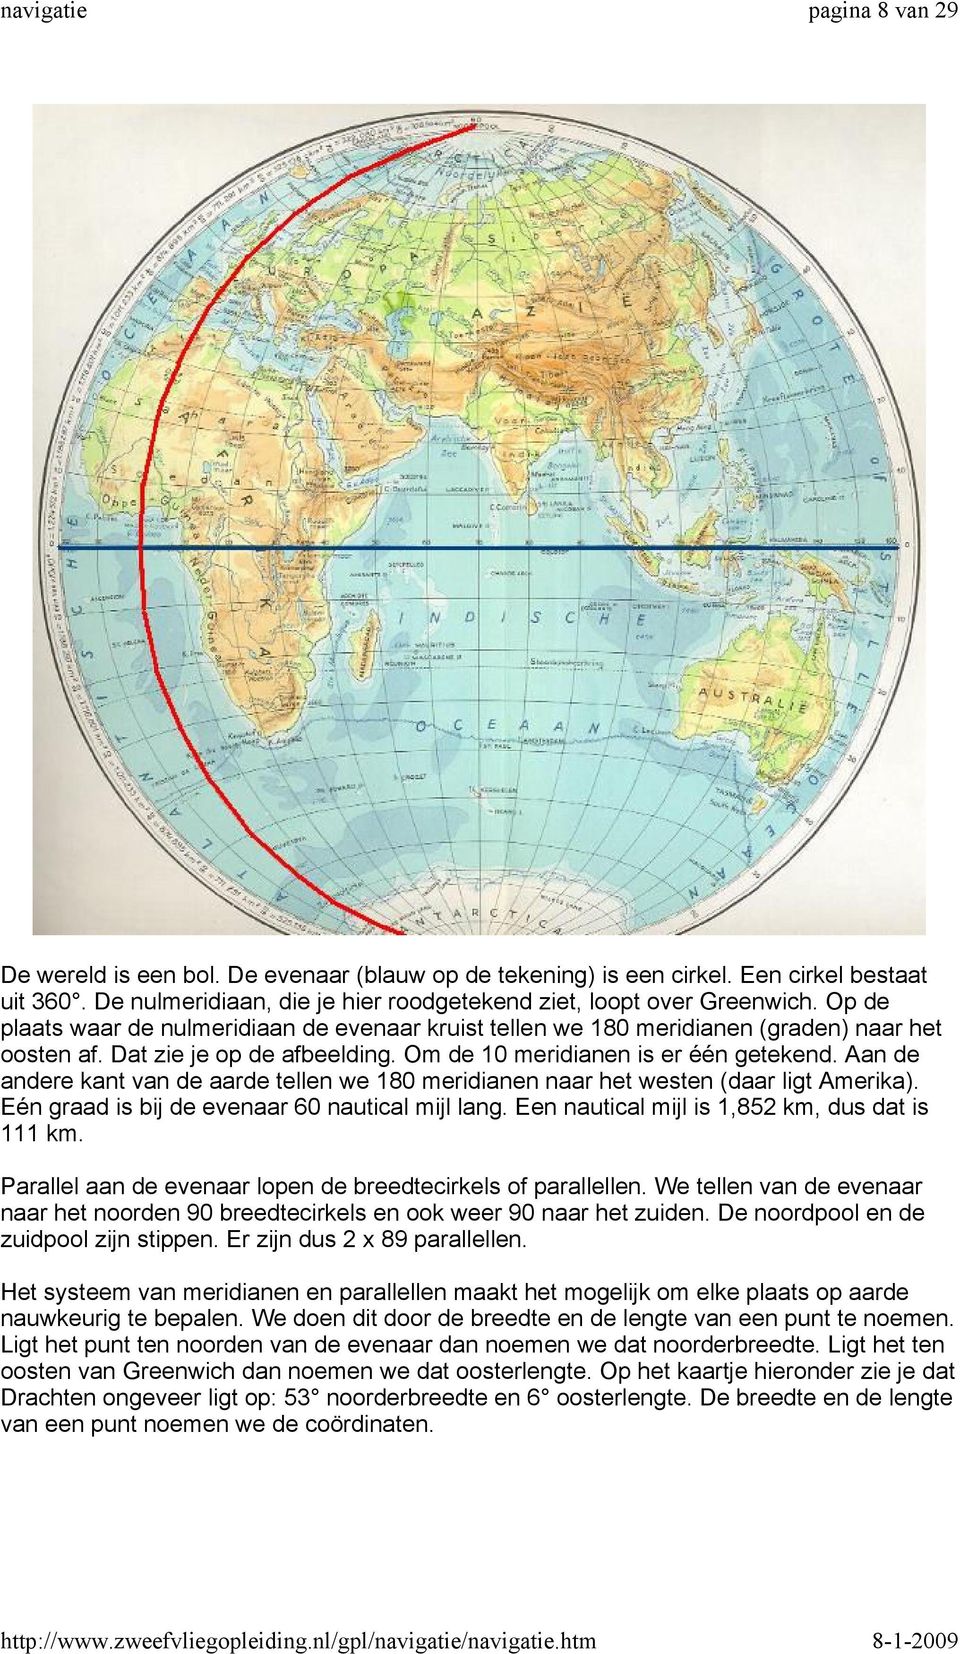 Aan de andere kant van de aarde tellen we 180 meridianen naar het westen (daar ligt Amerika). Eén graad is bij de evenaar 60 nautical mijl lang. Een nautical mijl is 1,852 km, dus dat is 111 km.